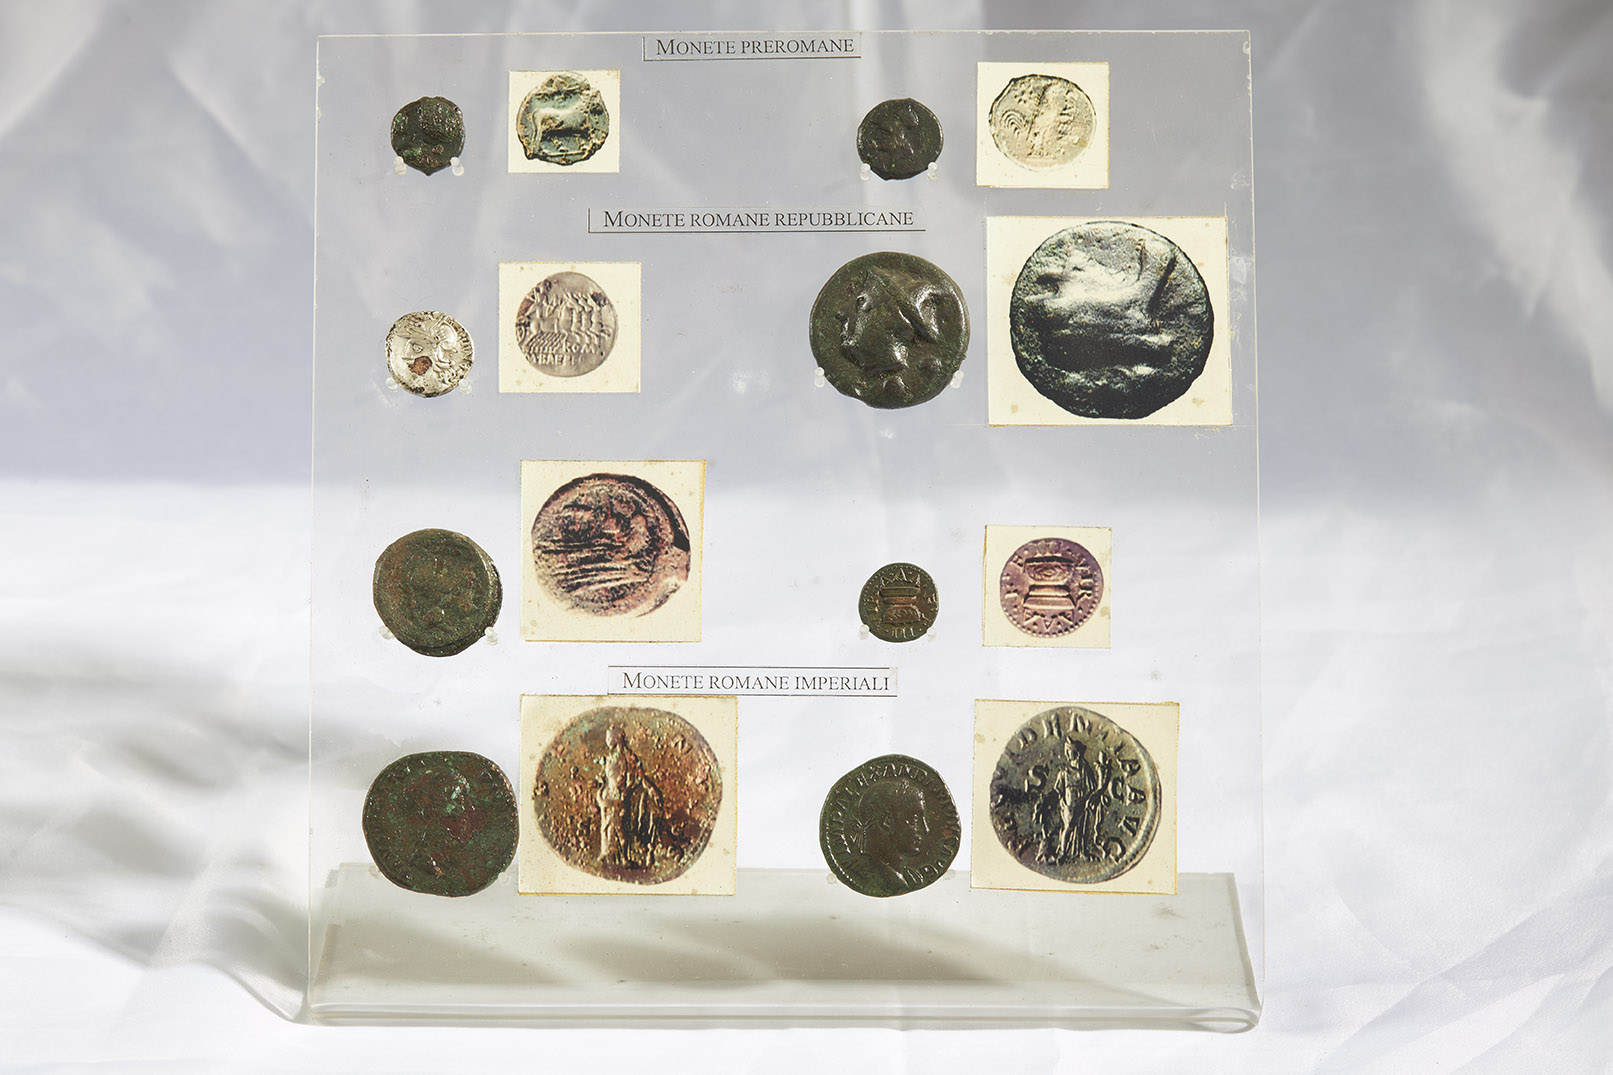 Espositore di monete preromane, repubblicane e imperiali